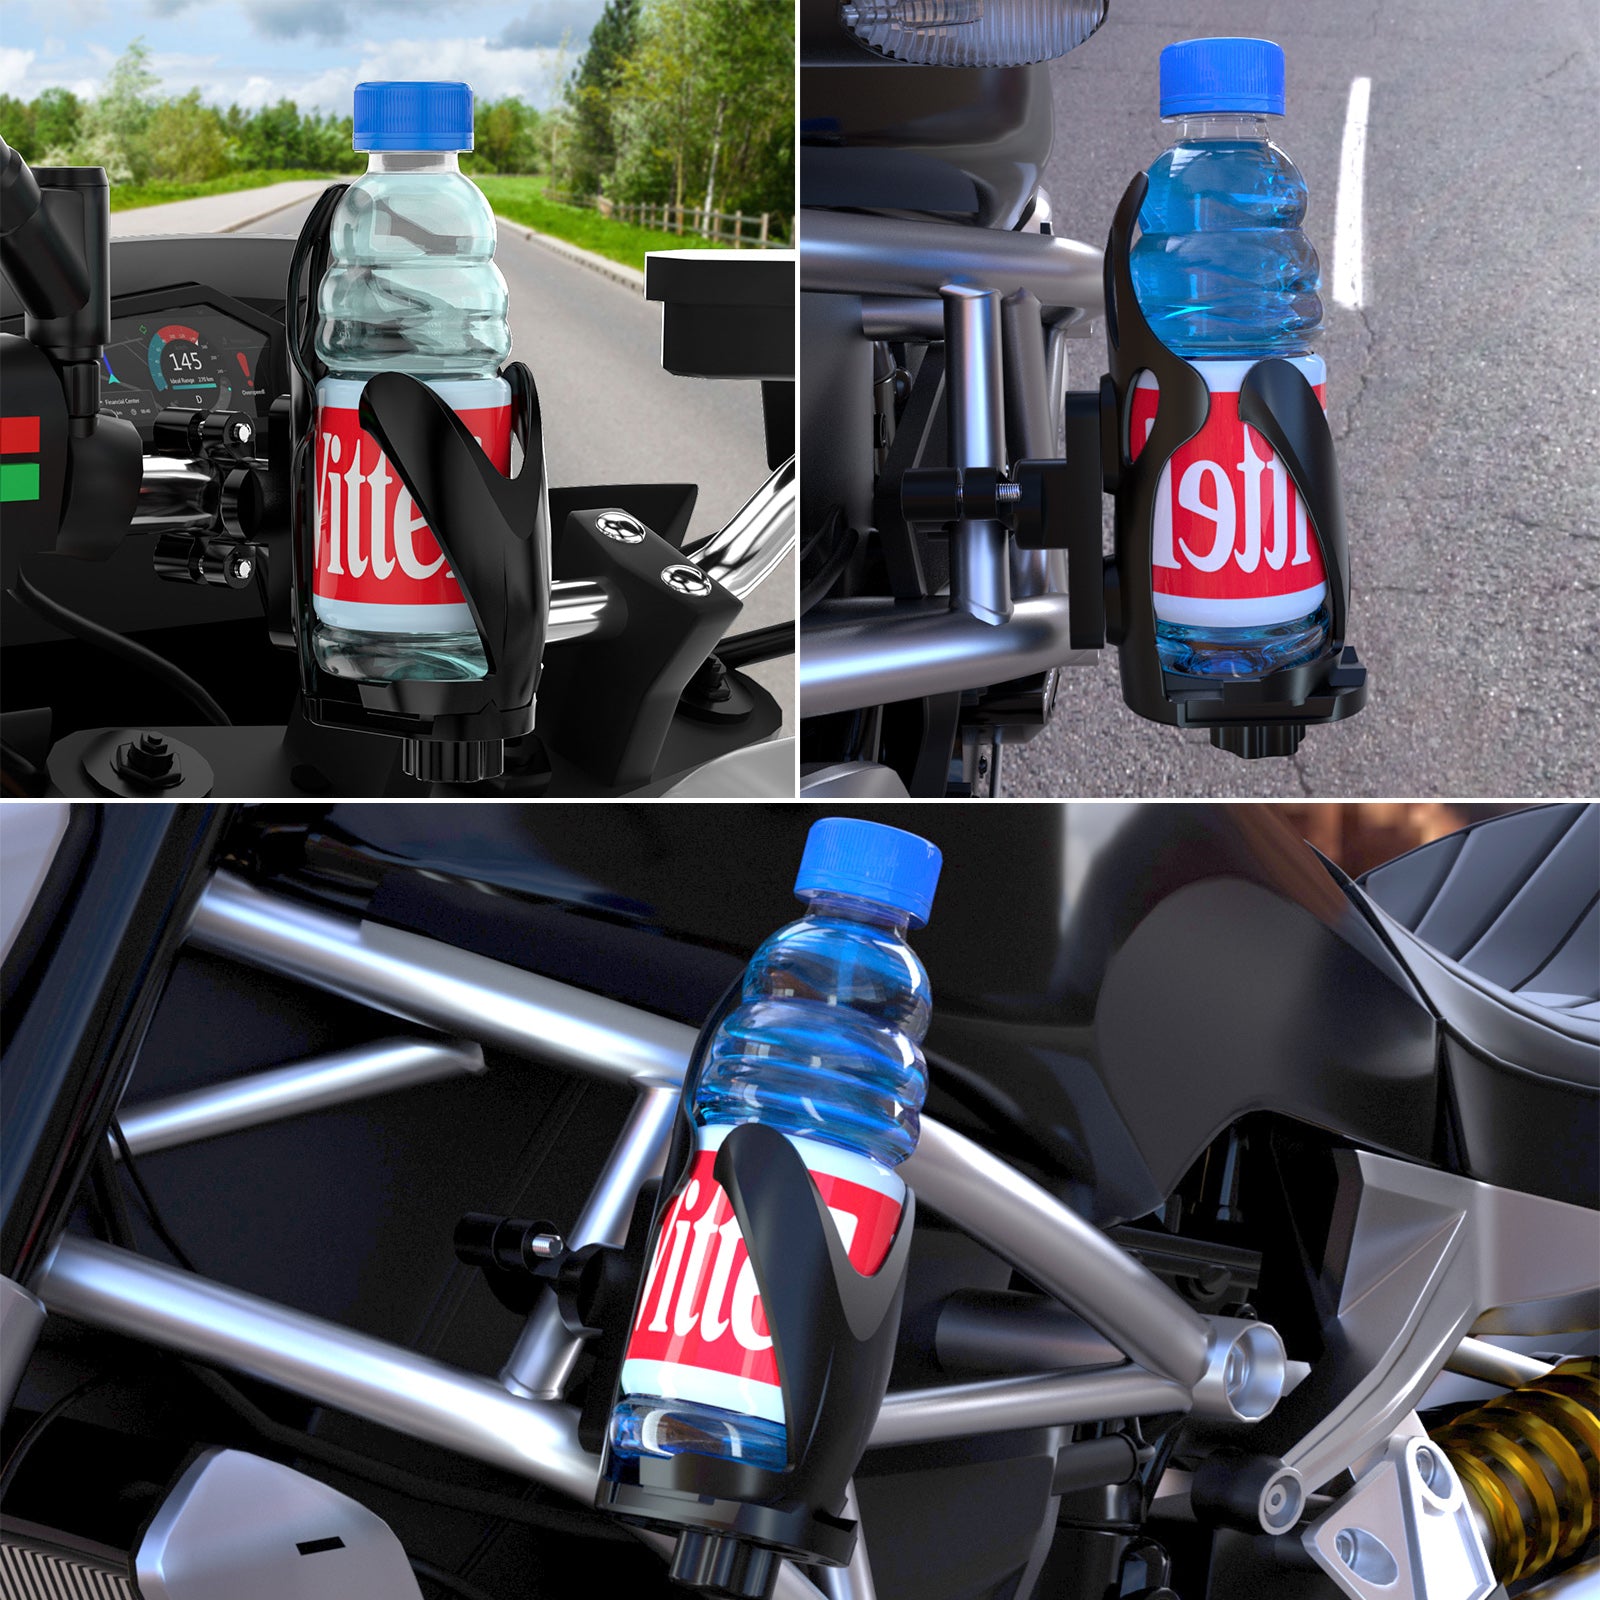 Staffa di montaggio per bottiglia portabicchieri regolabile per manubrio motore per scooter Atv NeroC generico